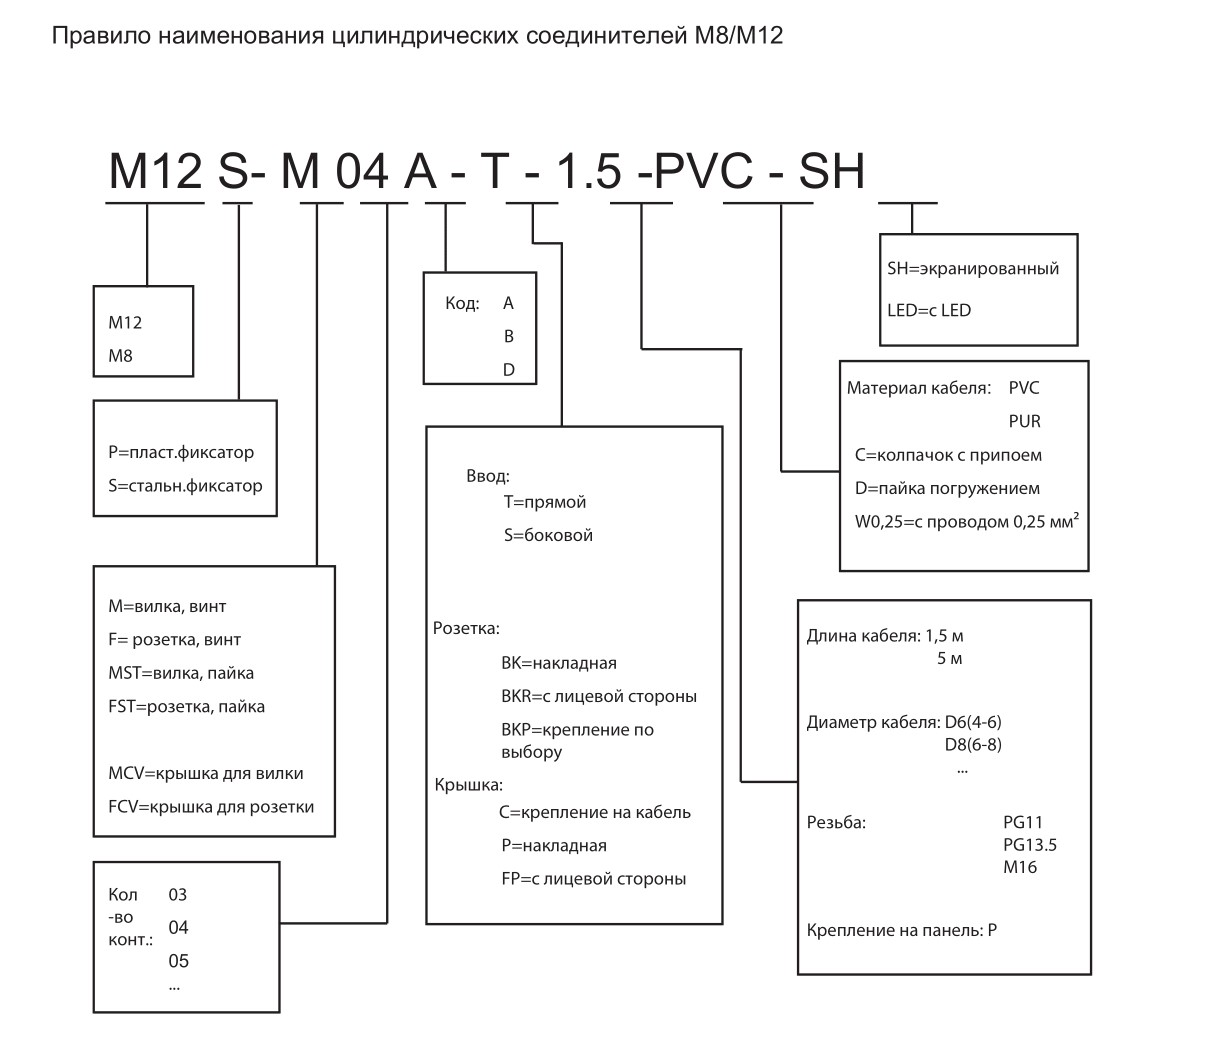 Цилиндрический соединитель-вилка с кабелем M12-M12A-S-5.0-PVC 1630125014002: Структура обозначения